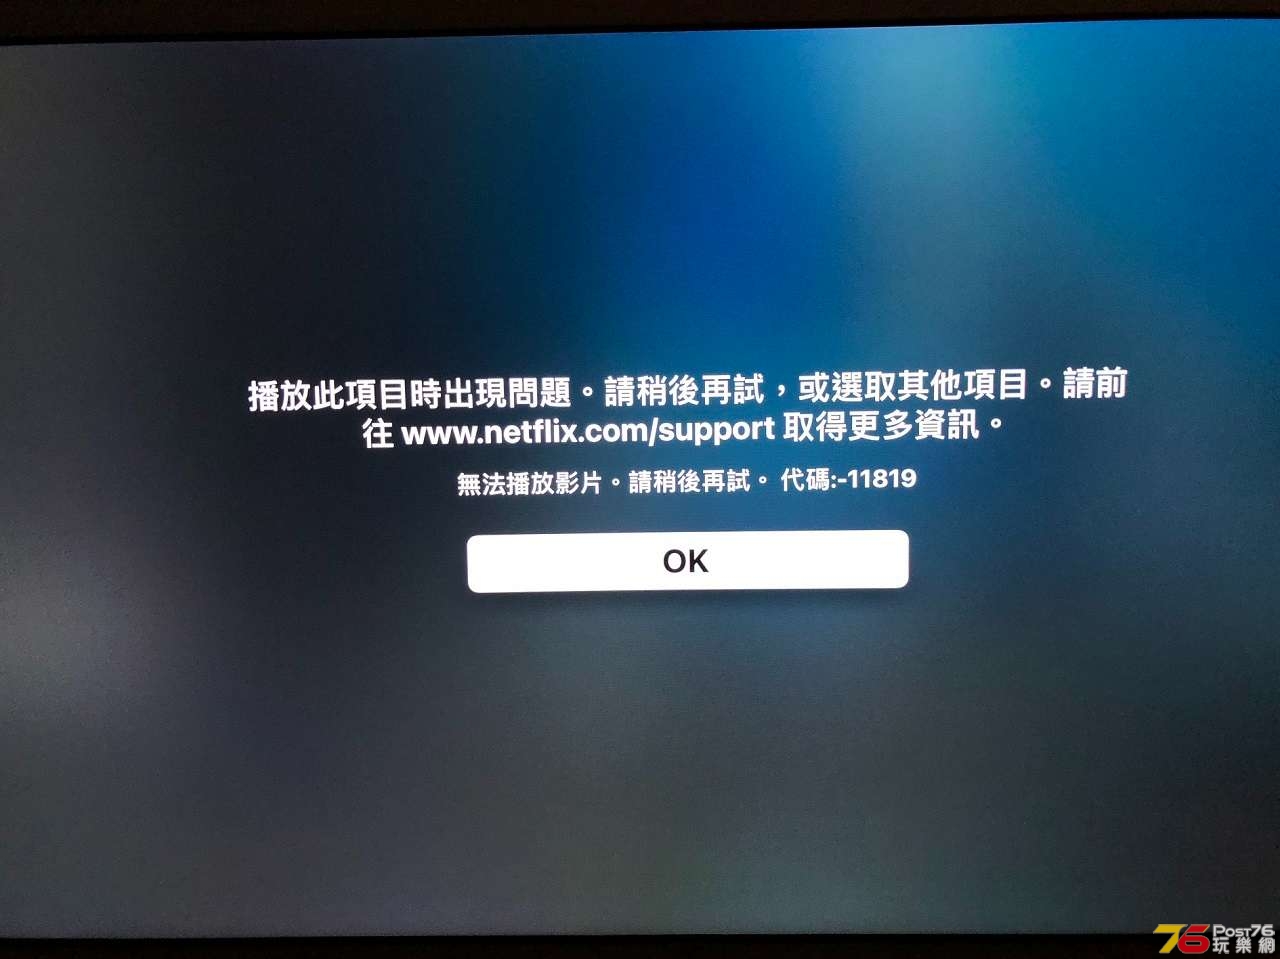 Netflix problem-Apple TV 4K.JPG